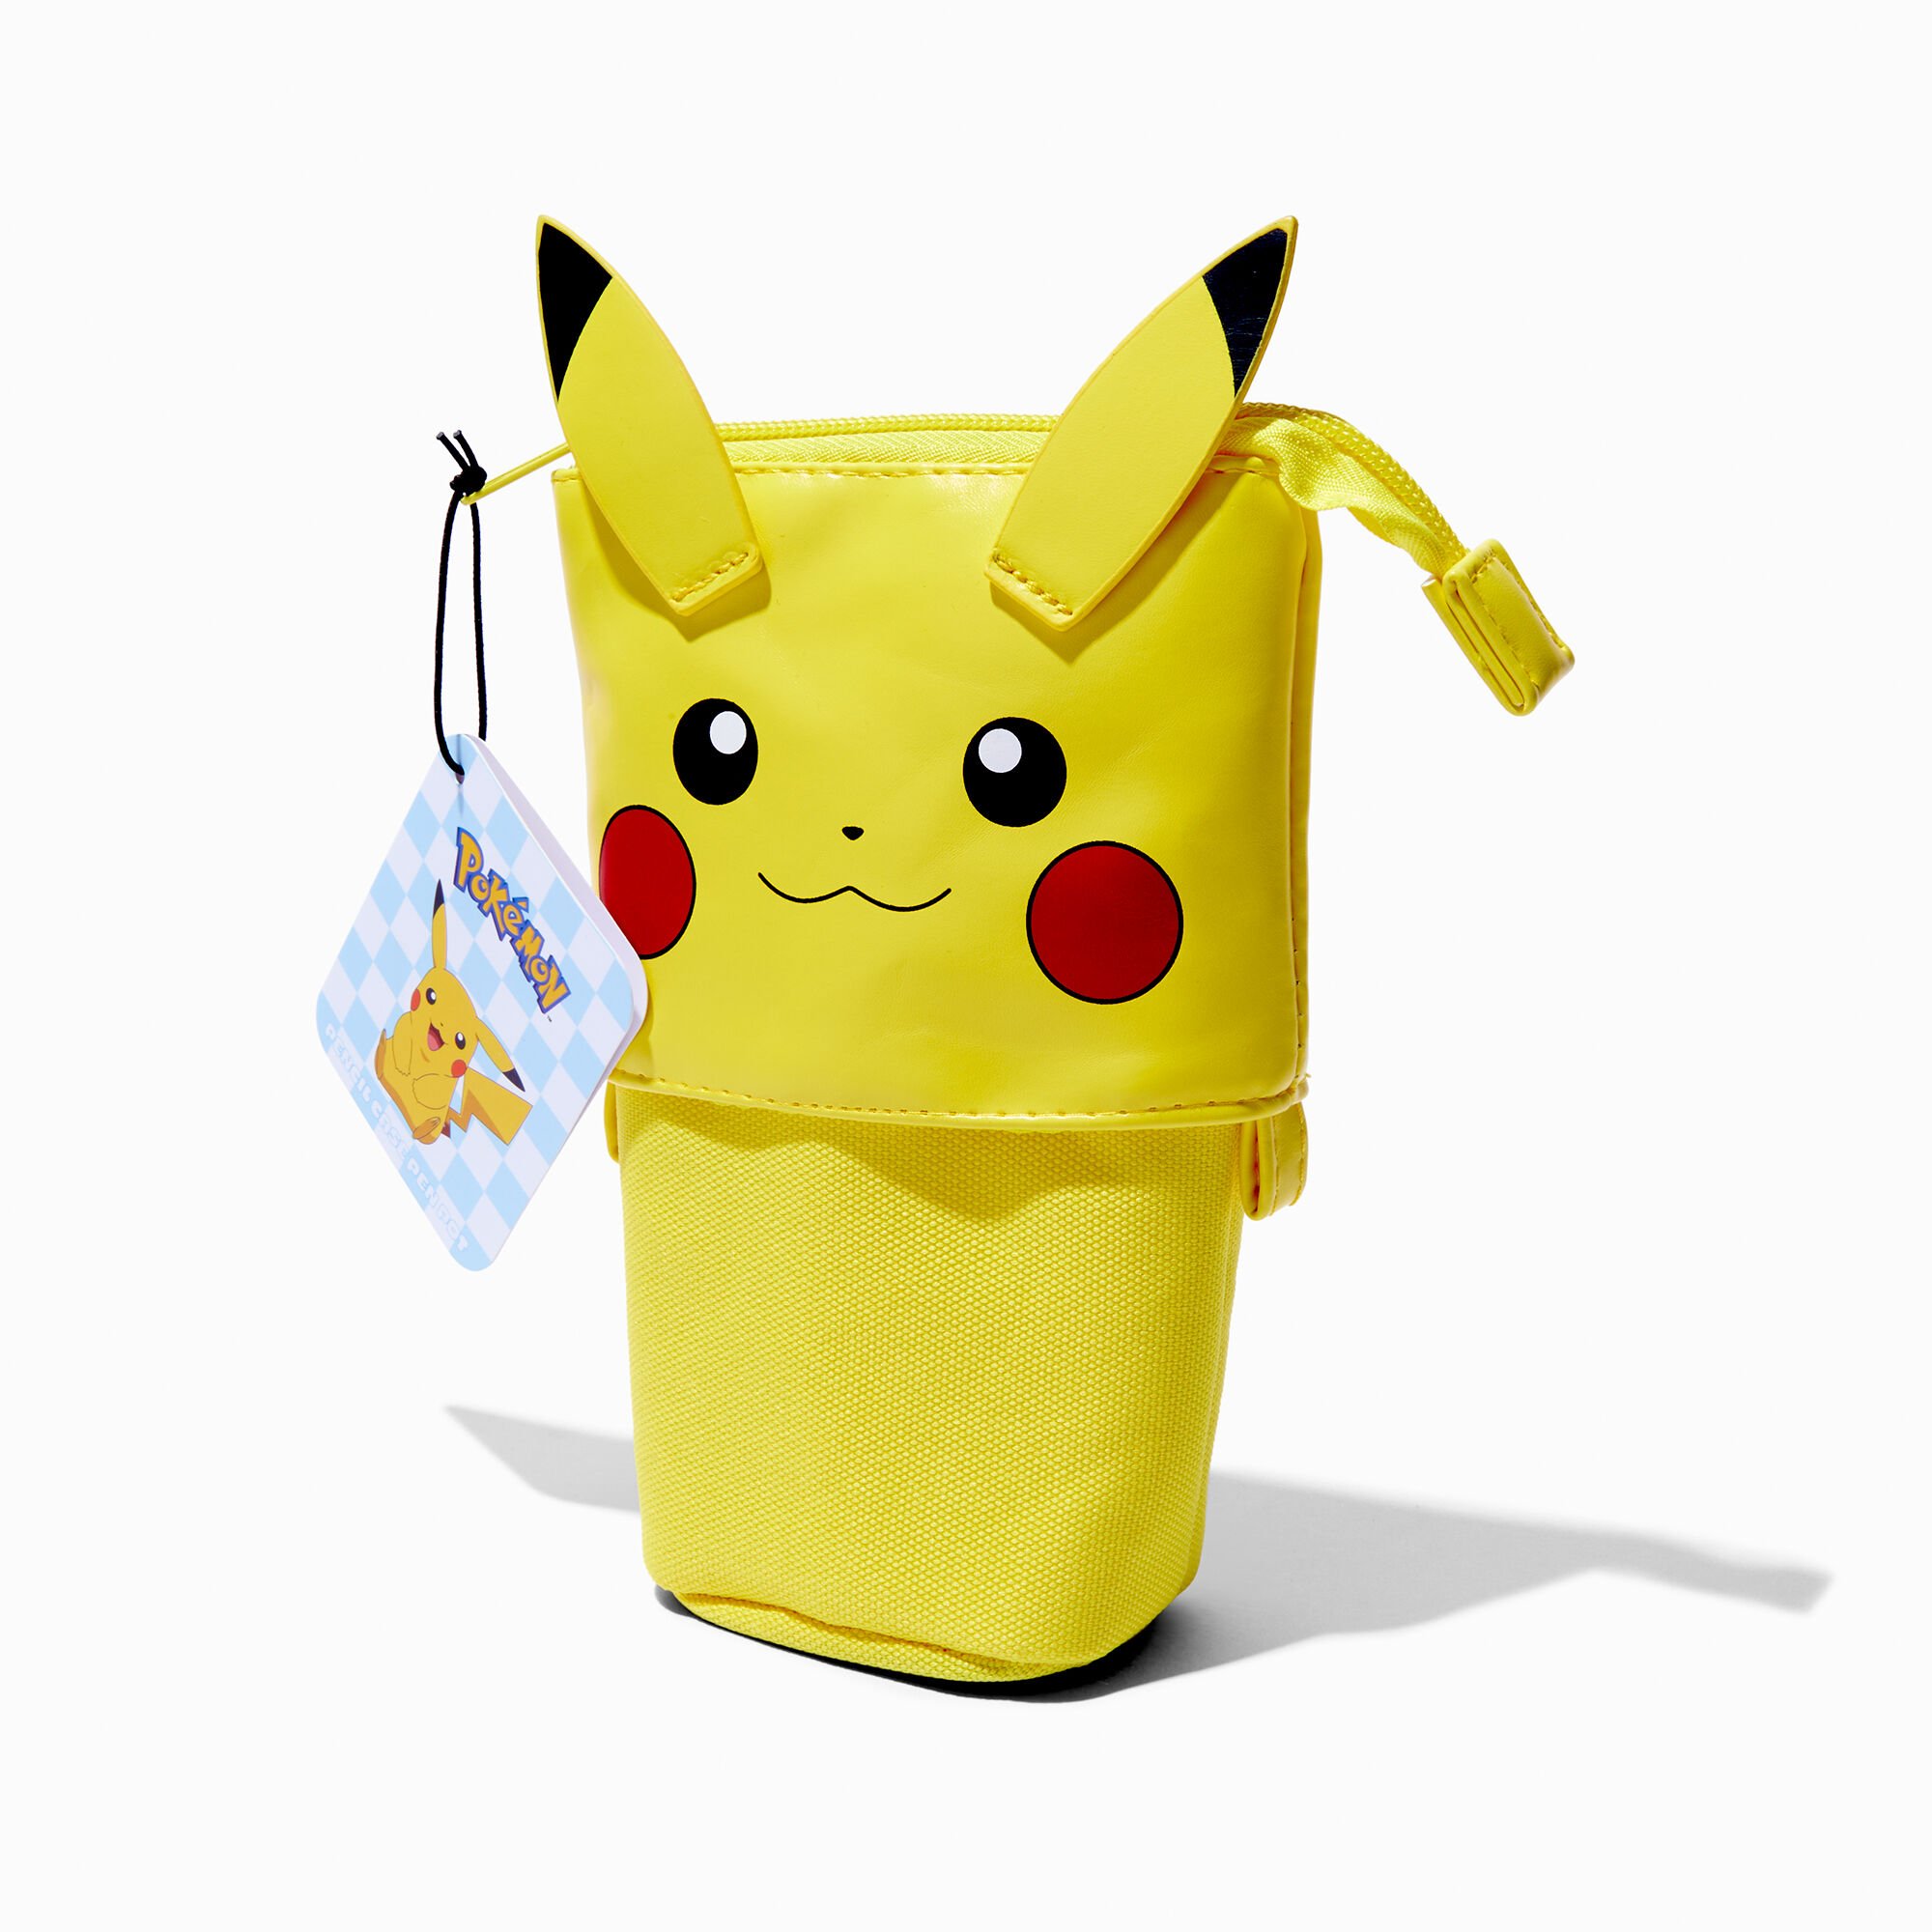 View Claires Pokémon Pikachu Pencil Case Yellow information